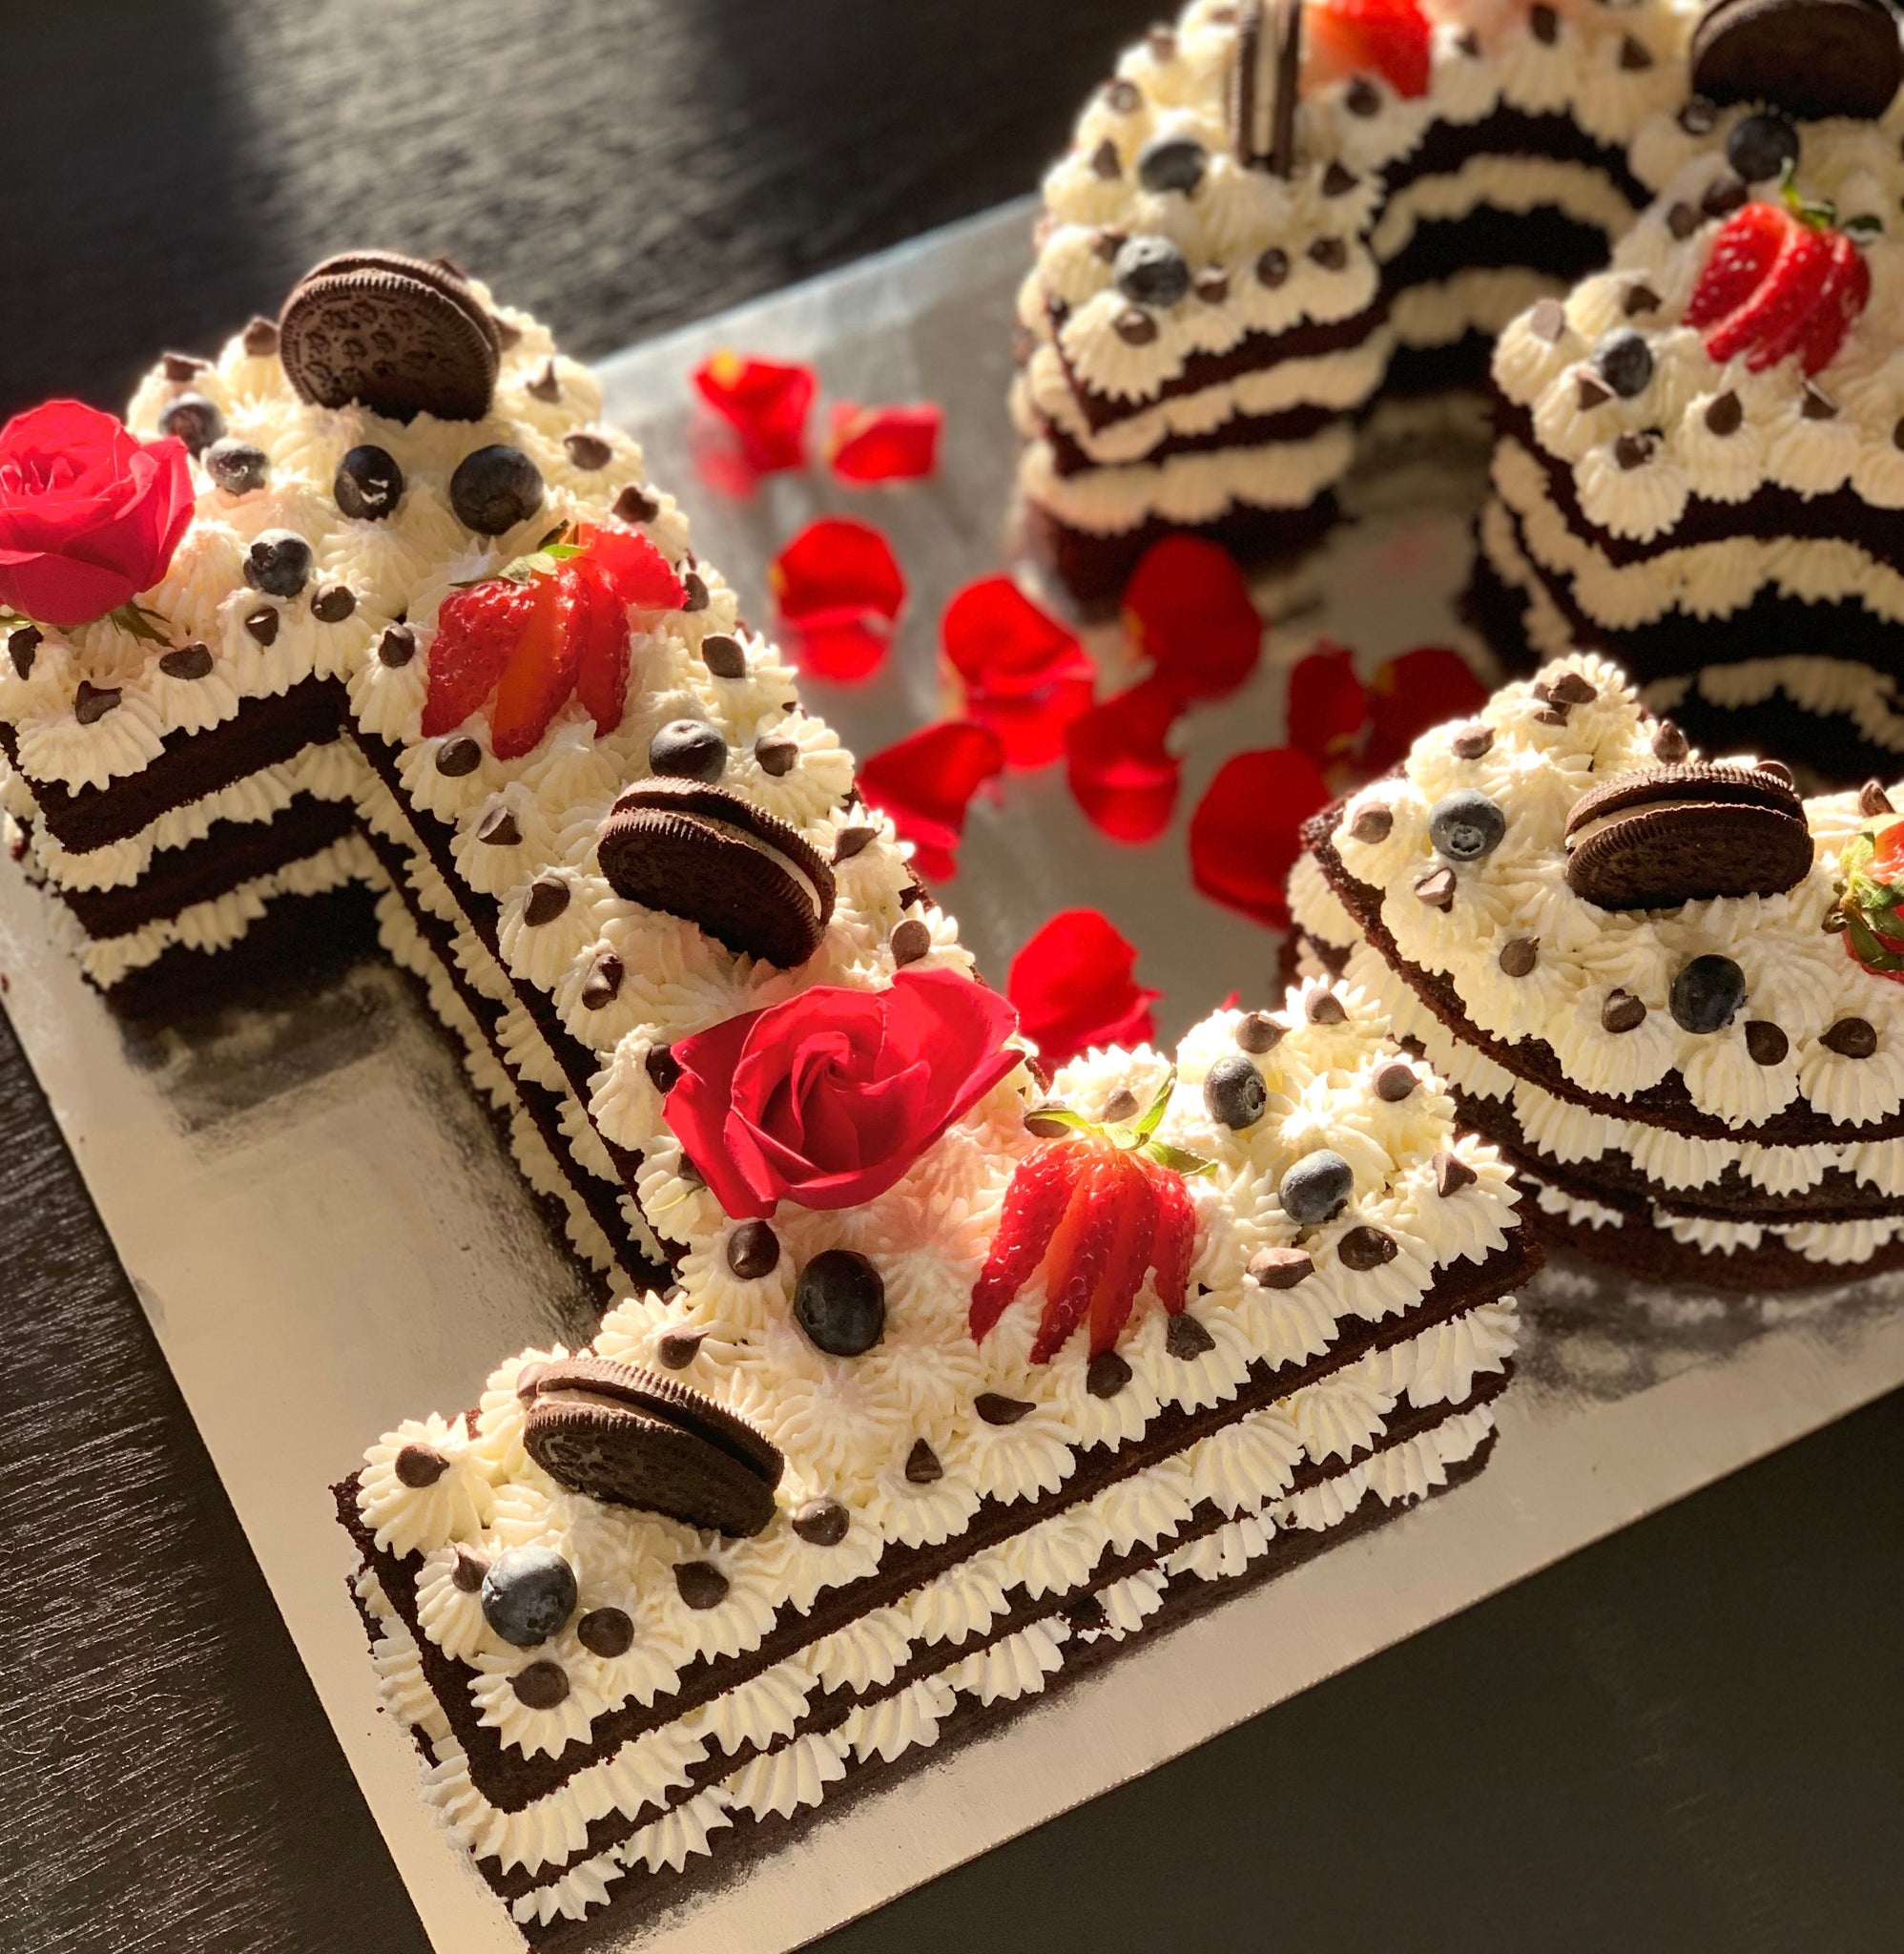 Buy/Send 50 Number Chocolate Cake Online @ Rs. 6299 - SendBestGift